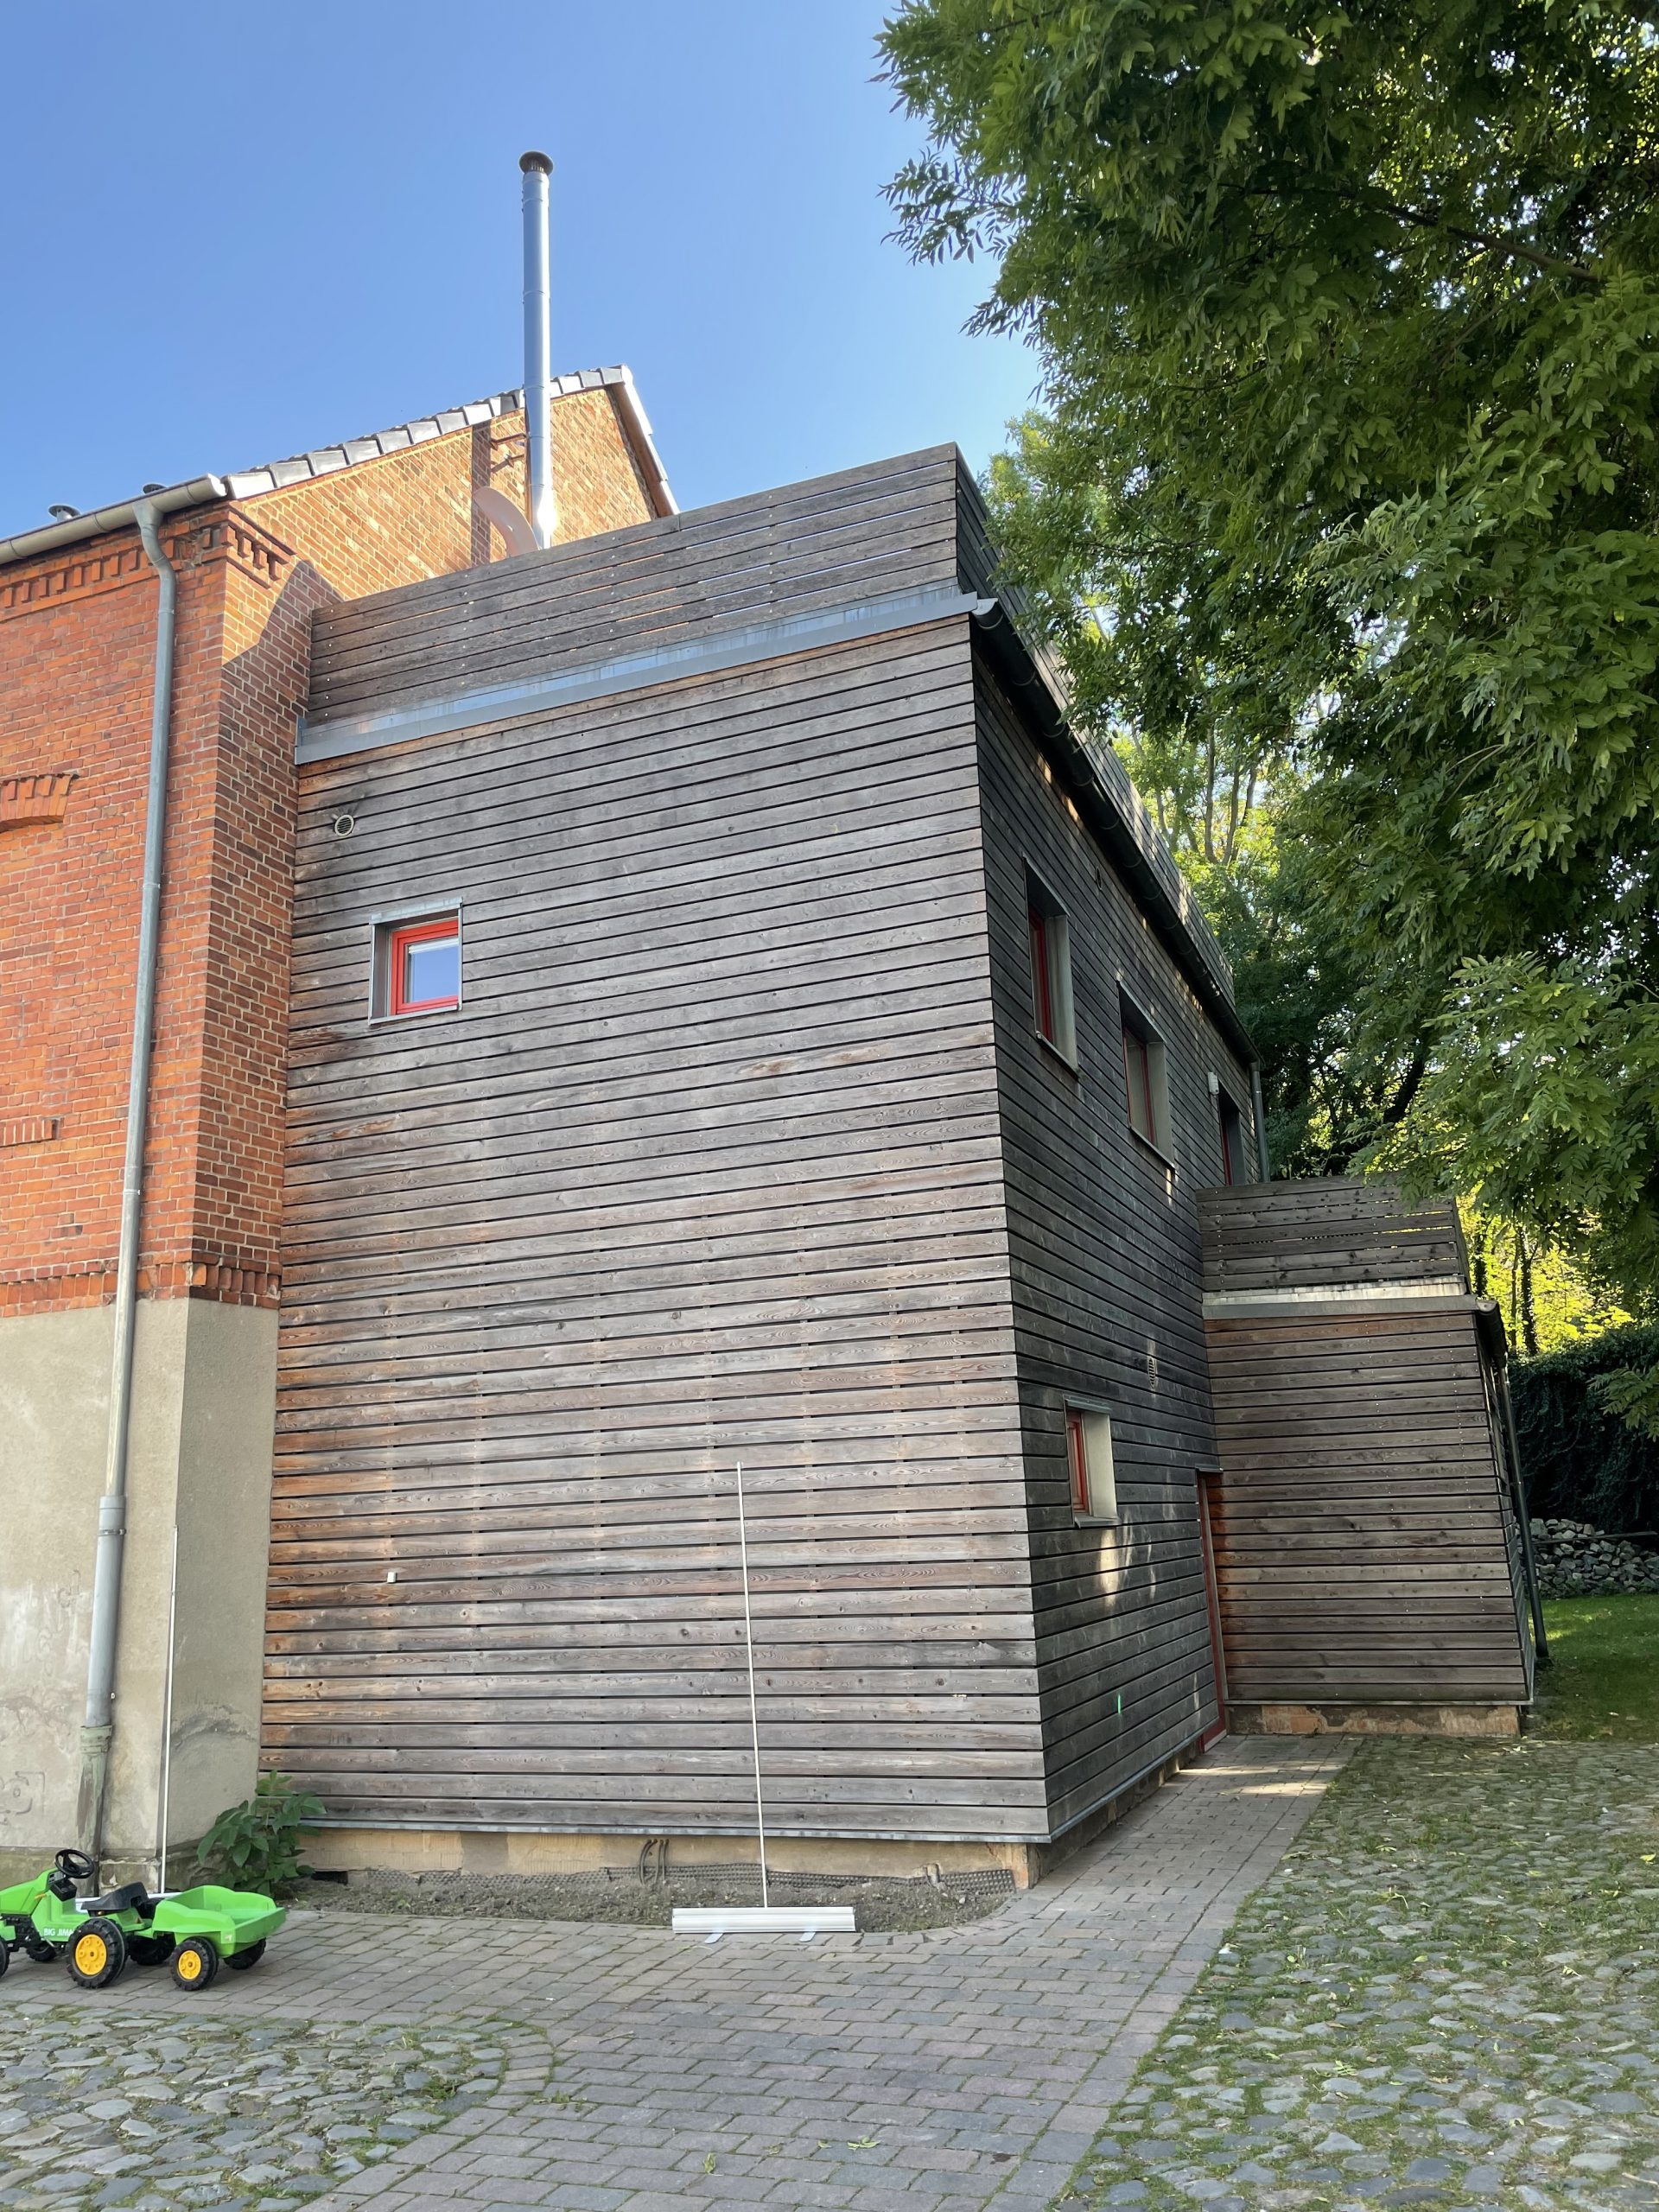 Büro- und Wohnhaus in Otterleben, Holzfassade